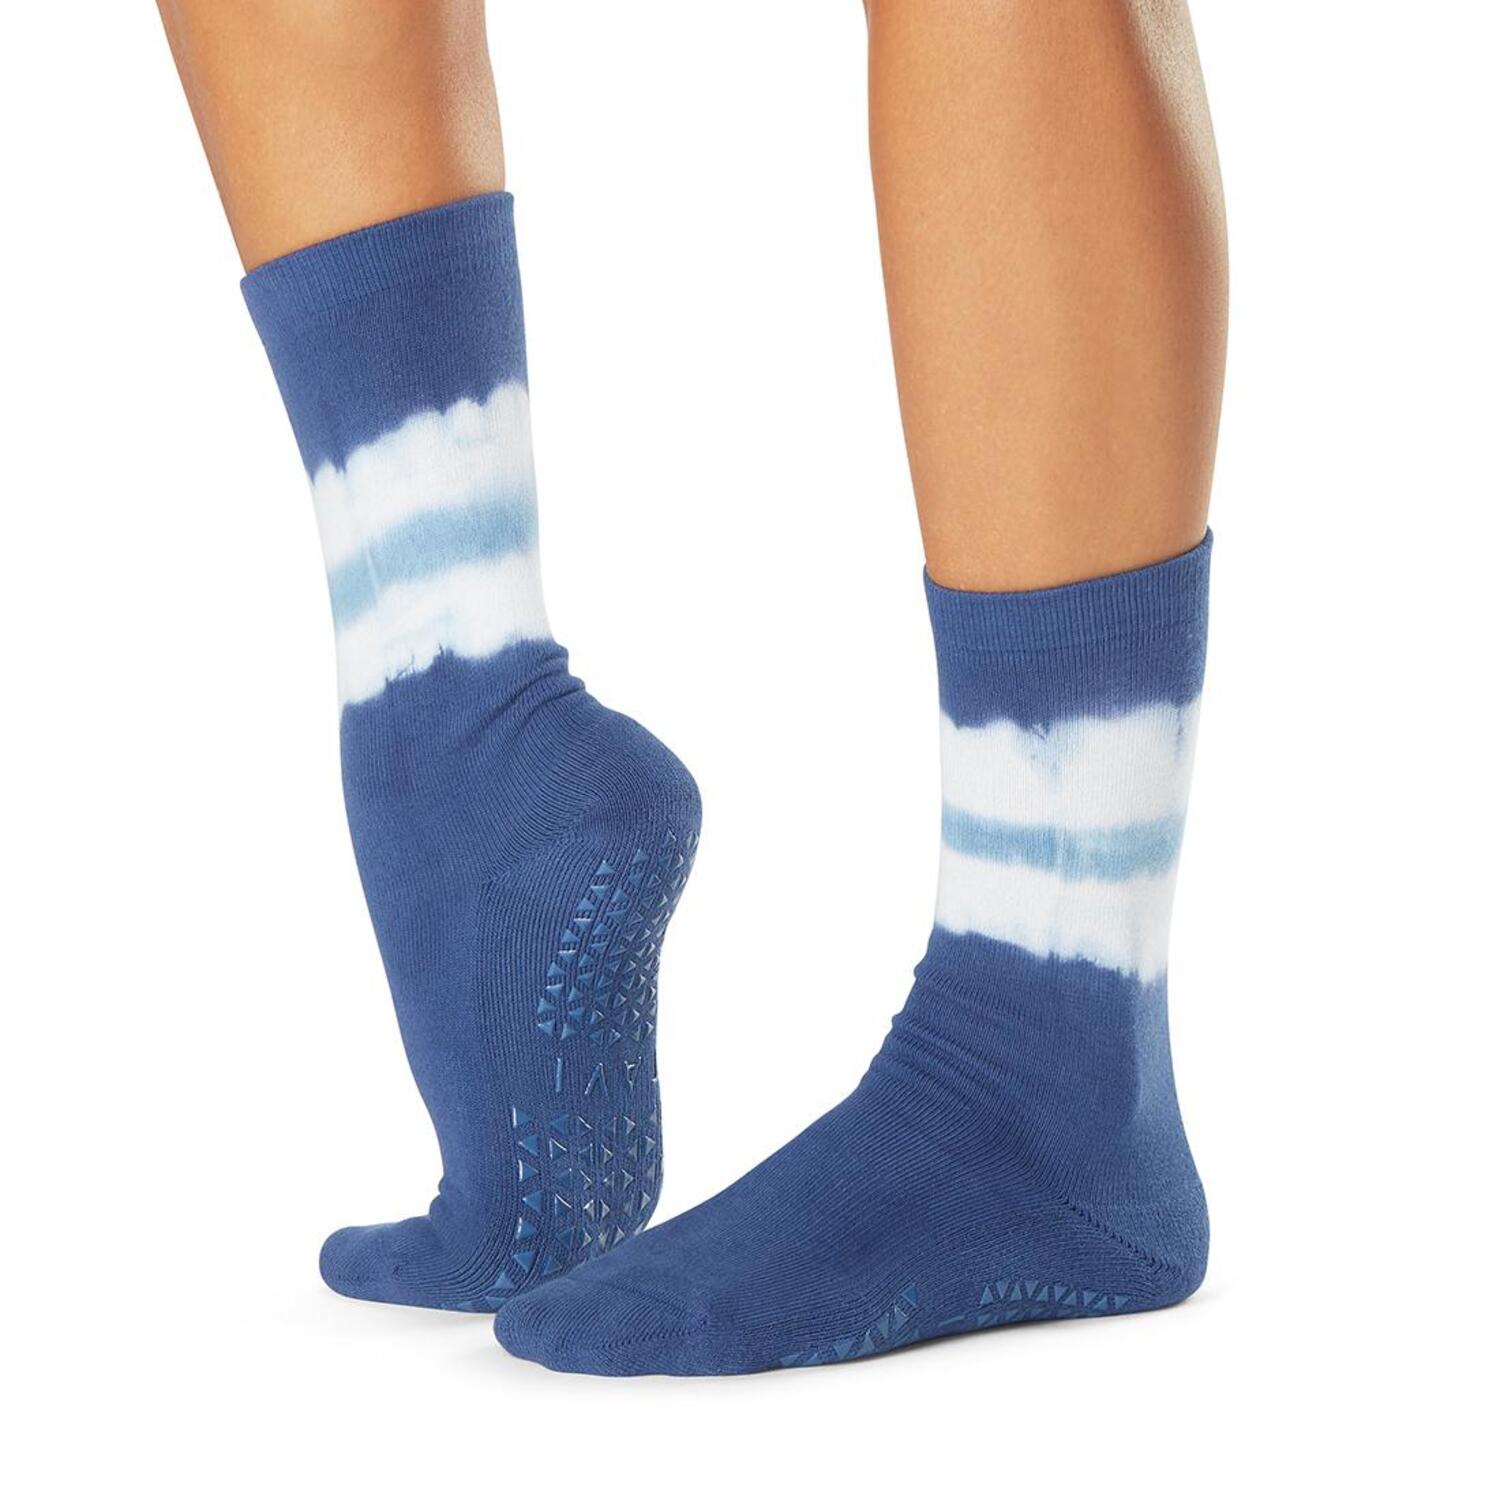 토삭스 코리아 공식쇼핑몰입니다. ToeSox | Five Toe Socks and Sandals